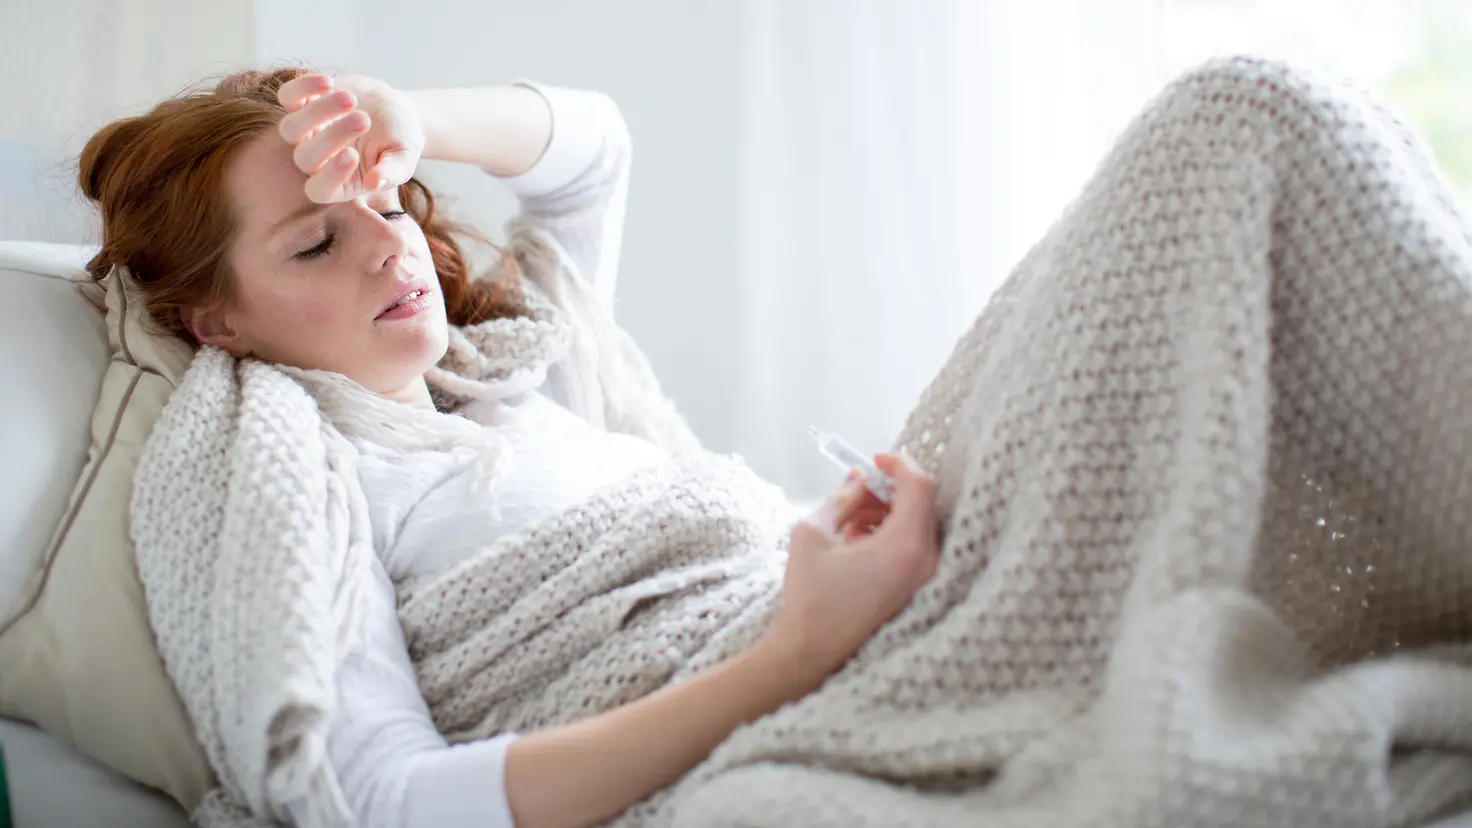 Zu sehen ist eine Frau unter einer wärmenden Decke mit Fieberthermometer in der Hand